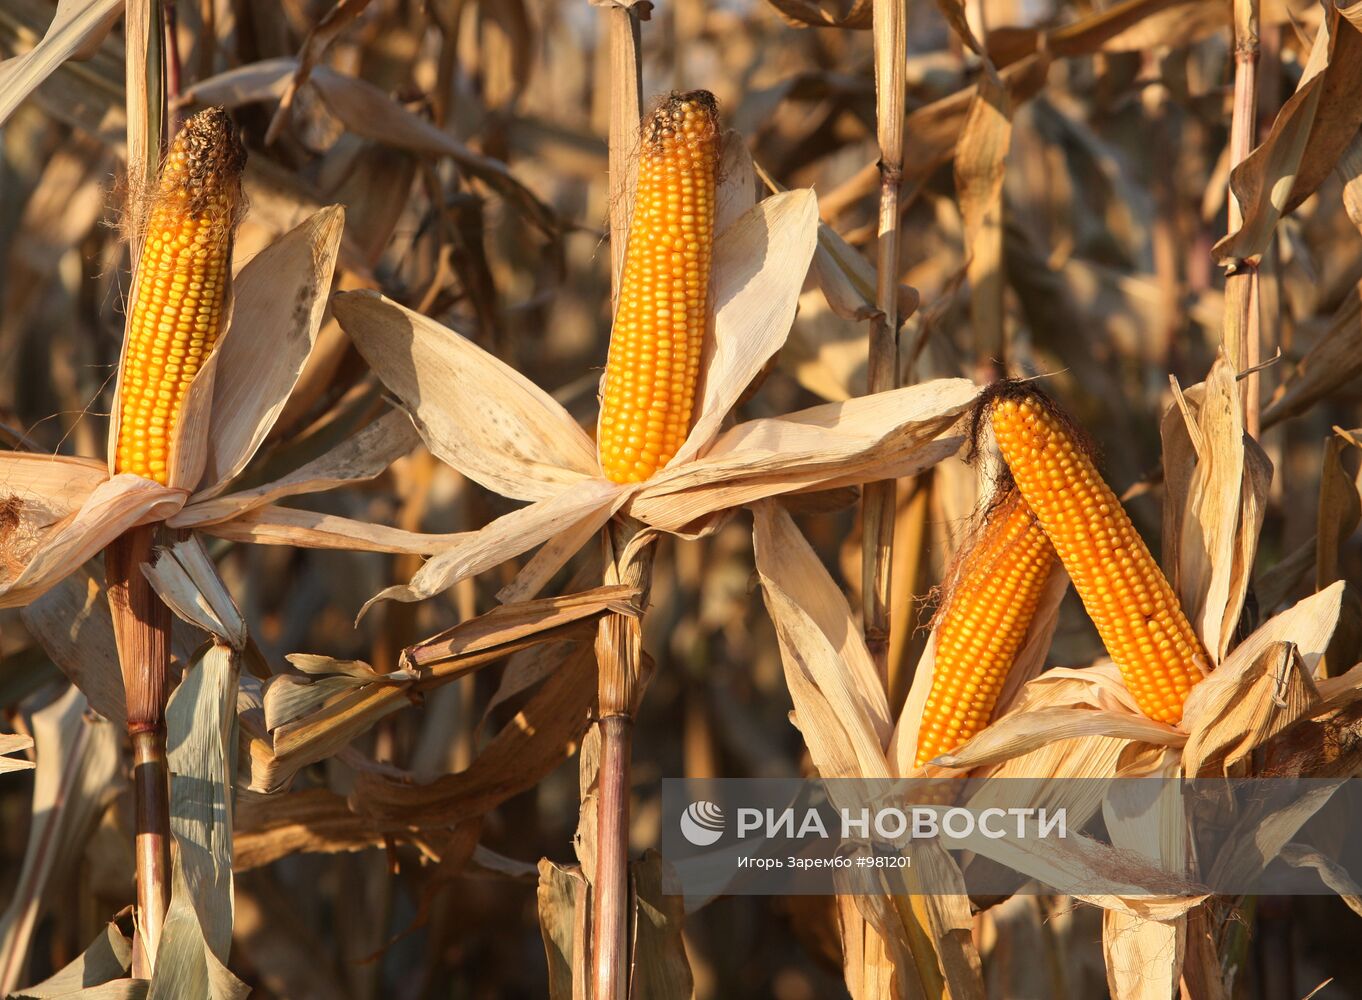 Уборка кукурузы на полях АПК "Долгов и К"